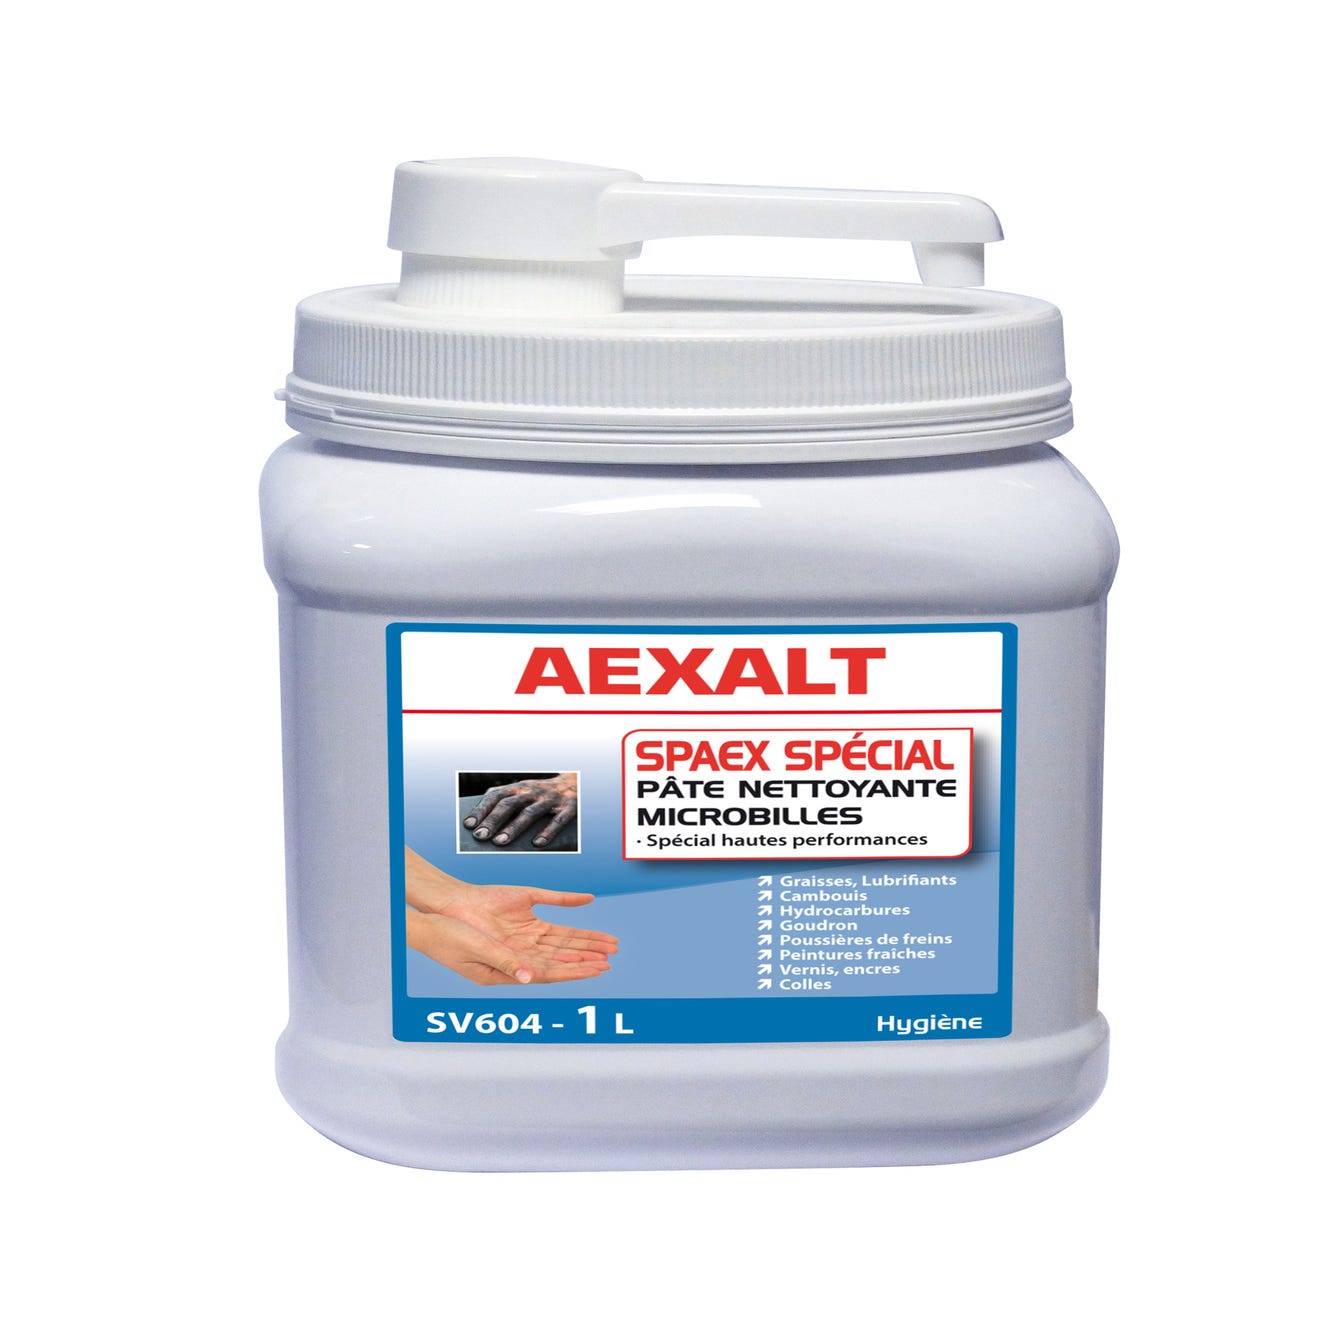 Crème mains nettoyante action microbrossante avec pompe 1 L Spaex spécial - AEXALT 0